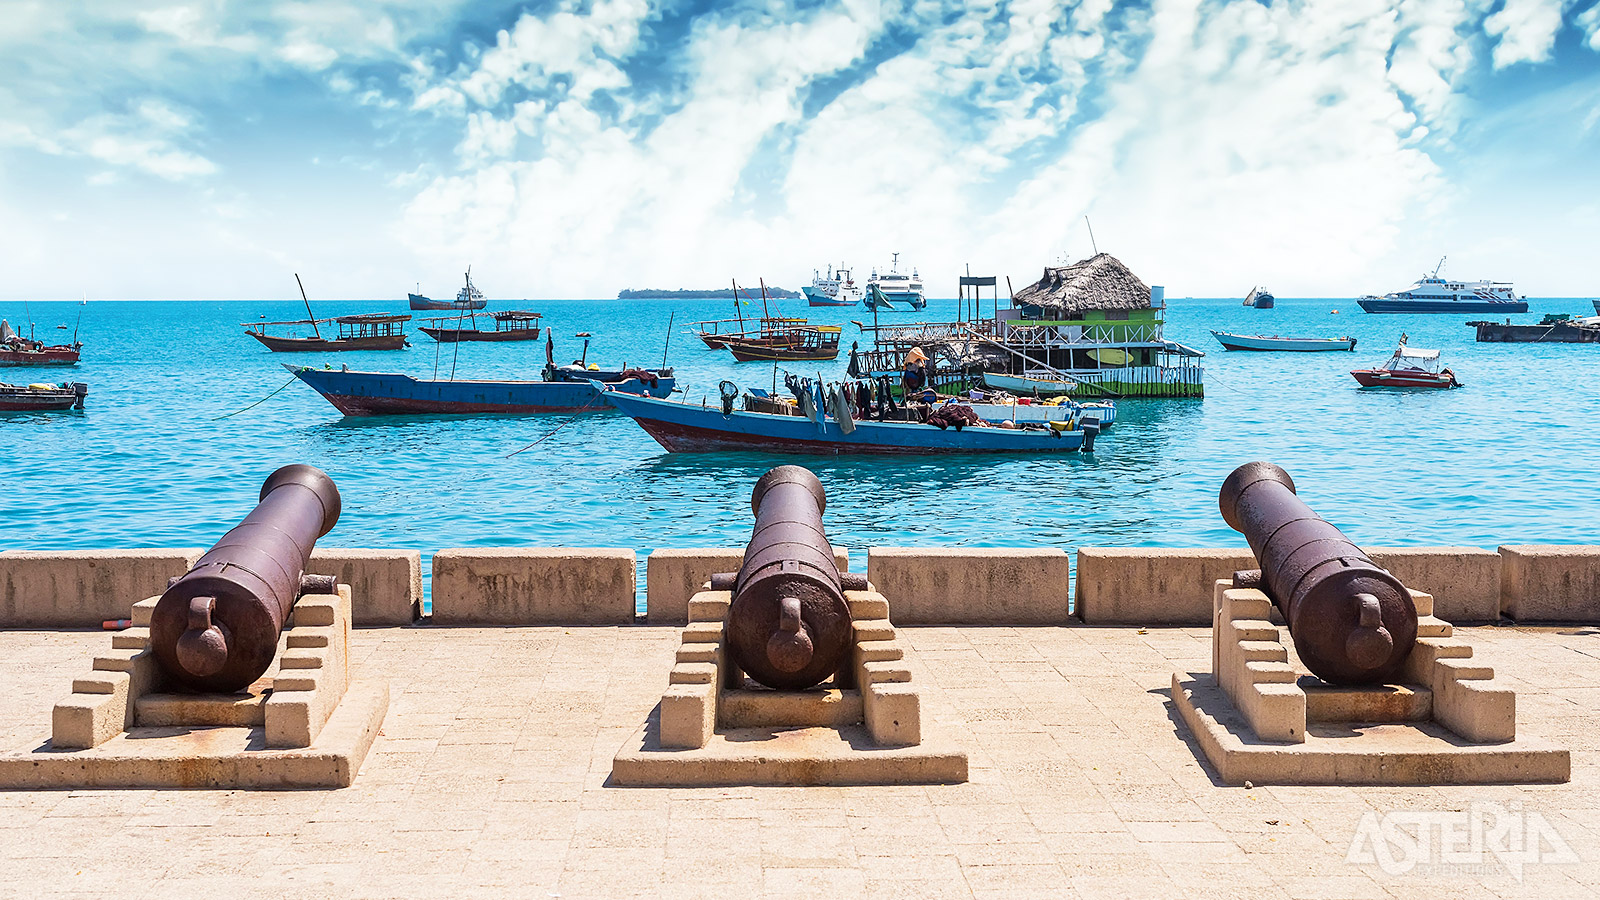 Stone Townis het oude centrum van het tropische Zanzibar voor de kust van Tanzania, op drie uur varen vanaf Dar es Salaam